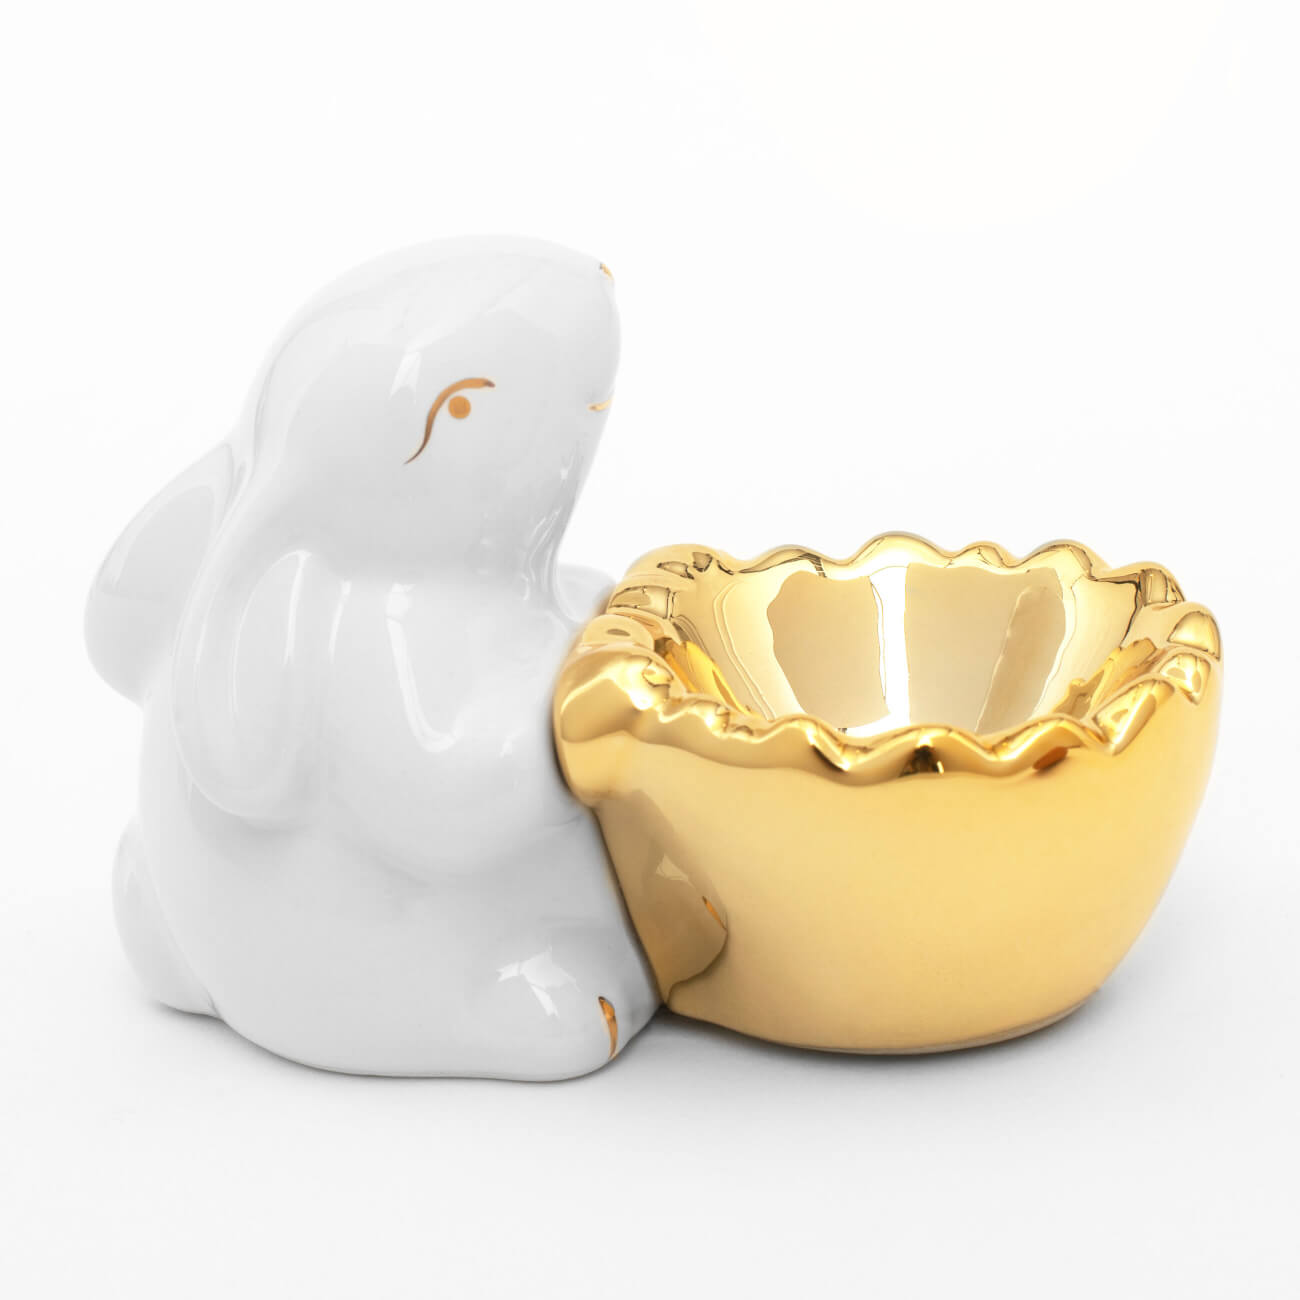 Подставка для яйца, 11 см, керамика, бело-золотистая, Кролик со скорлупой, Easter gold подставка для яйца доляна